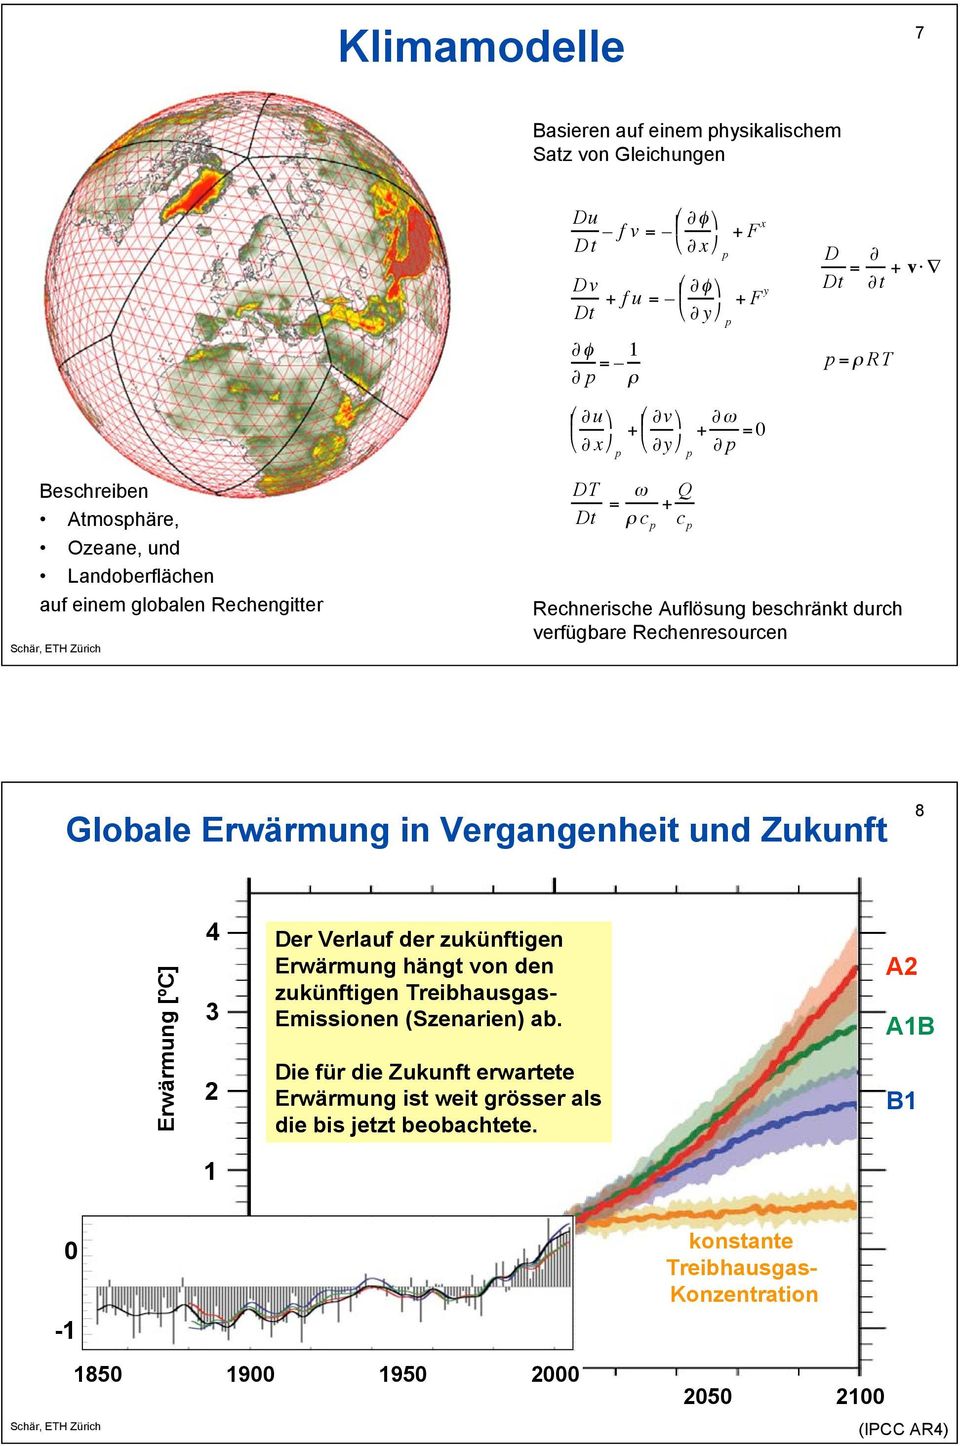 " c p + Q c p Rechnerische Auflösung beschränkt durch verfügbare Rechenresourcen Globale Erwärmung in Vergangenheit und Zukunft 8 Erwärmung [ºC] 4 3 2 Der Verlauf der zukünftigen Erwärmung